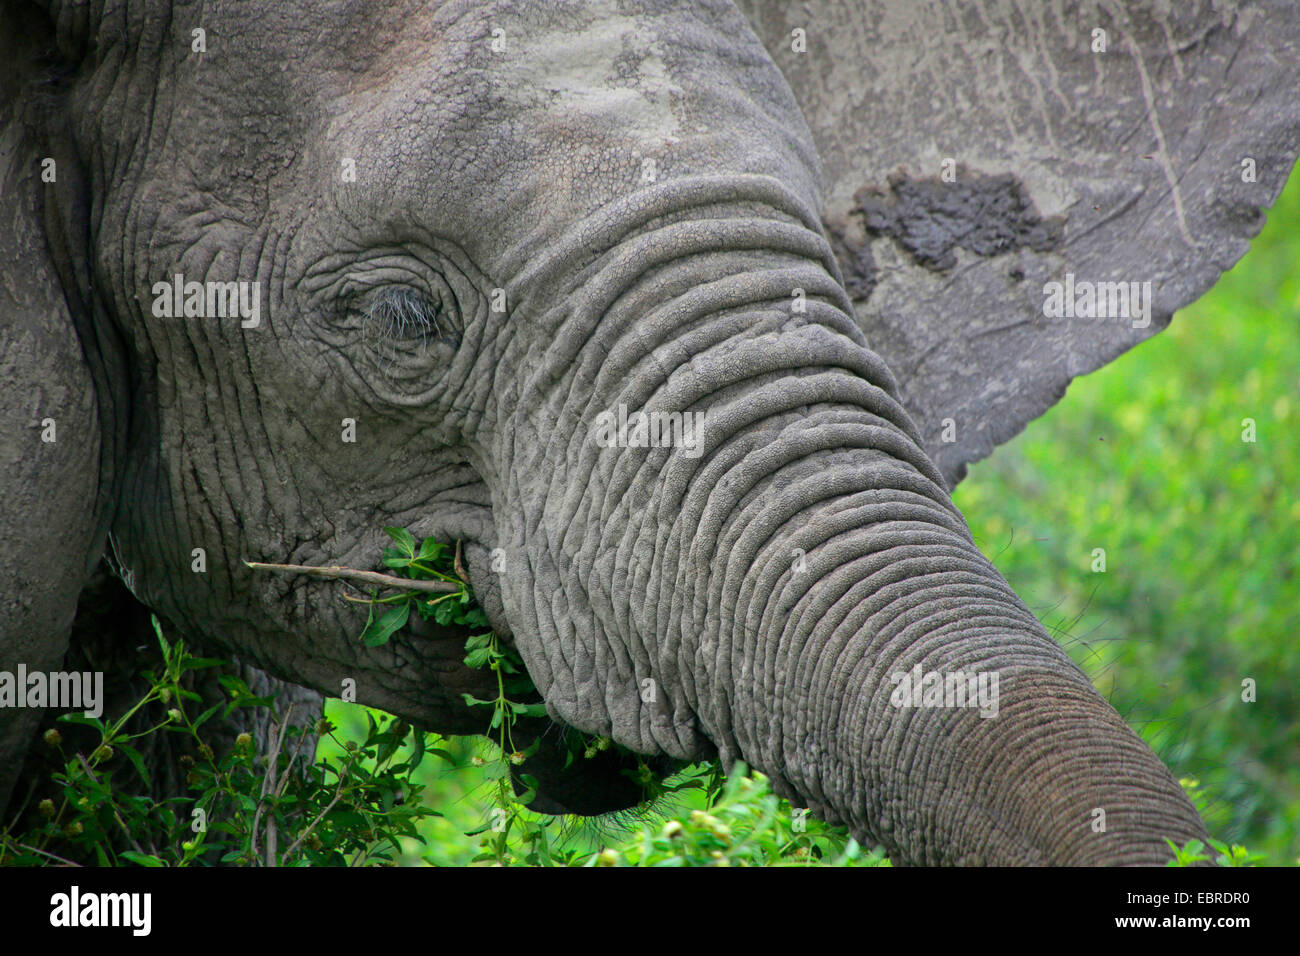 L'éléphant africain (Loxodonta africana), portrait, l'alimentation, la Tanzanie, le Parc National du Serengeti Banque D'Images